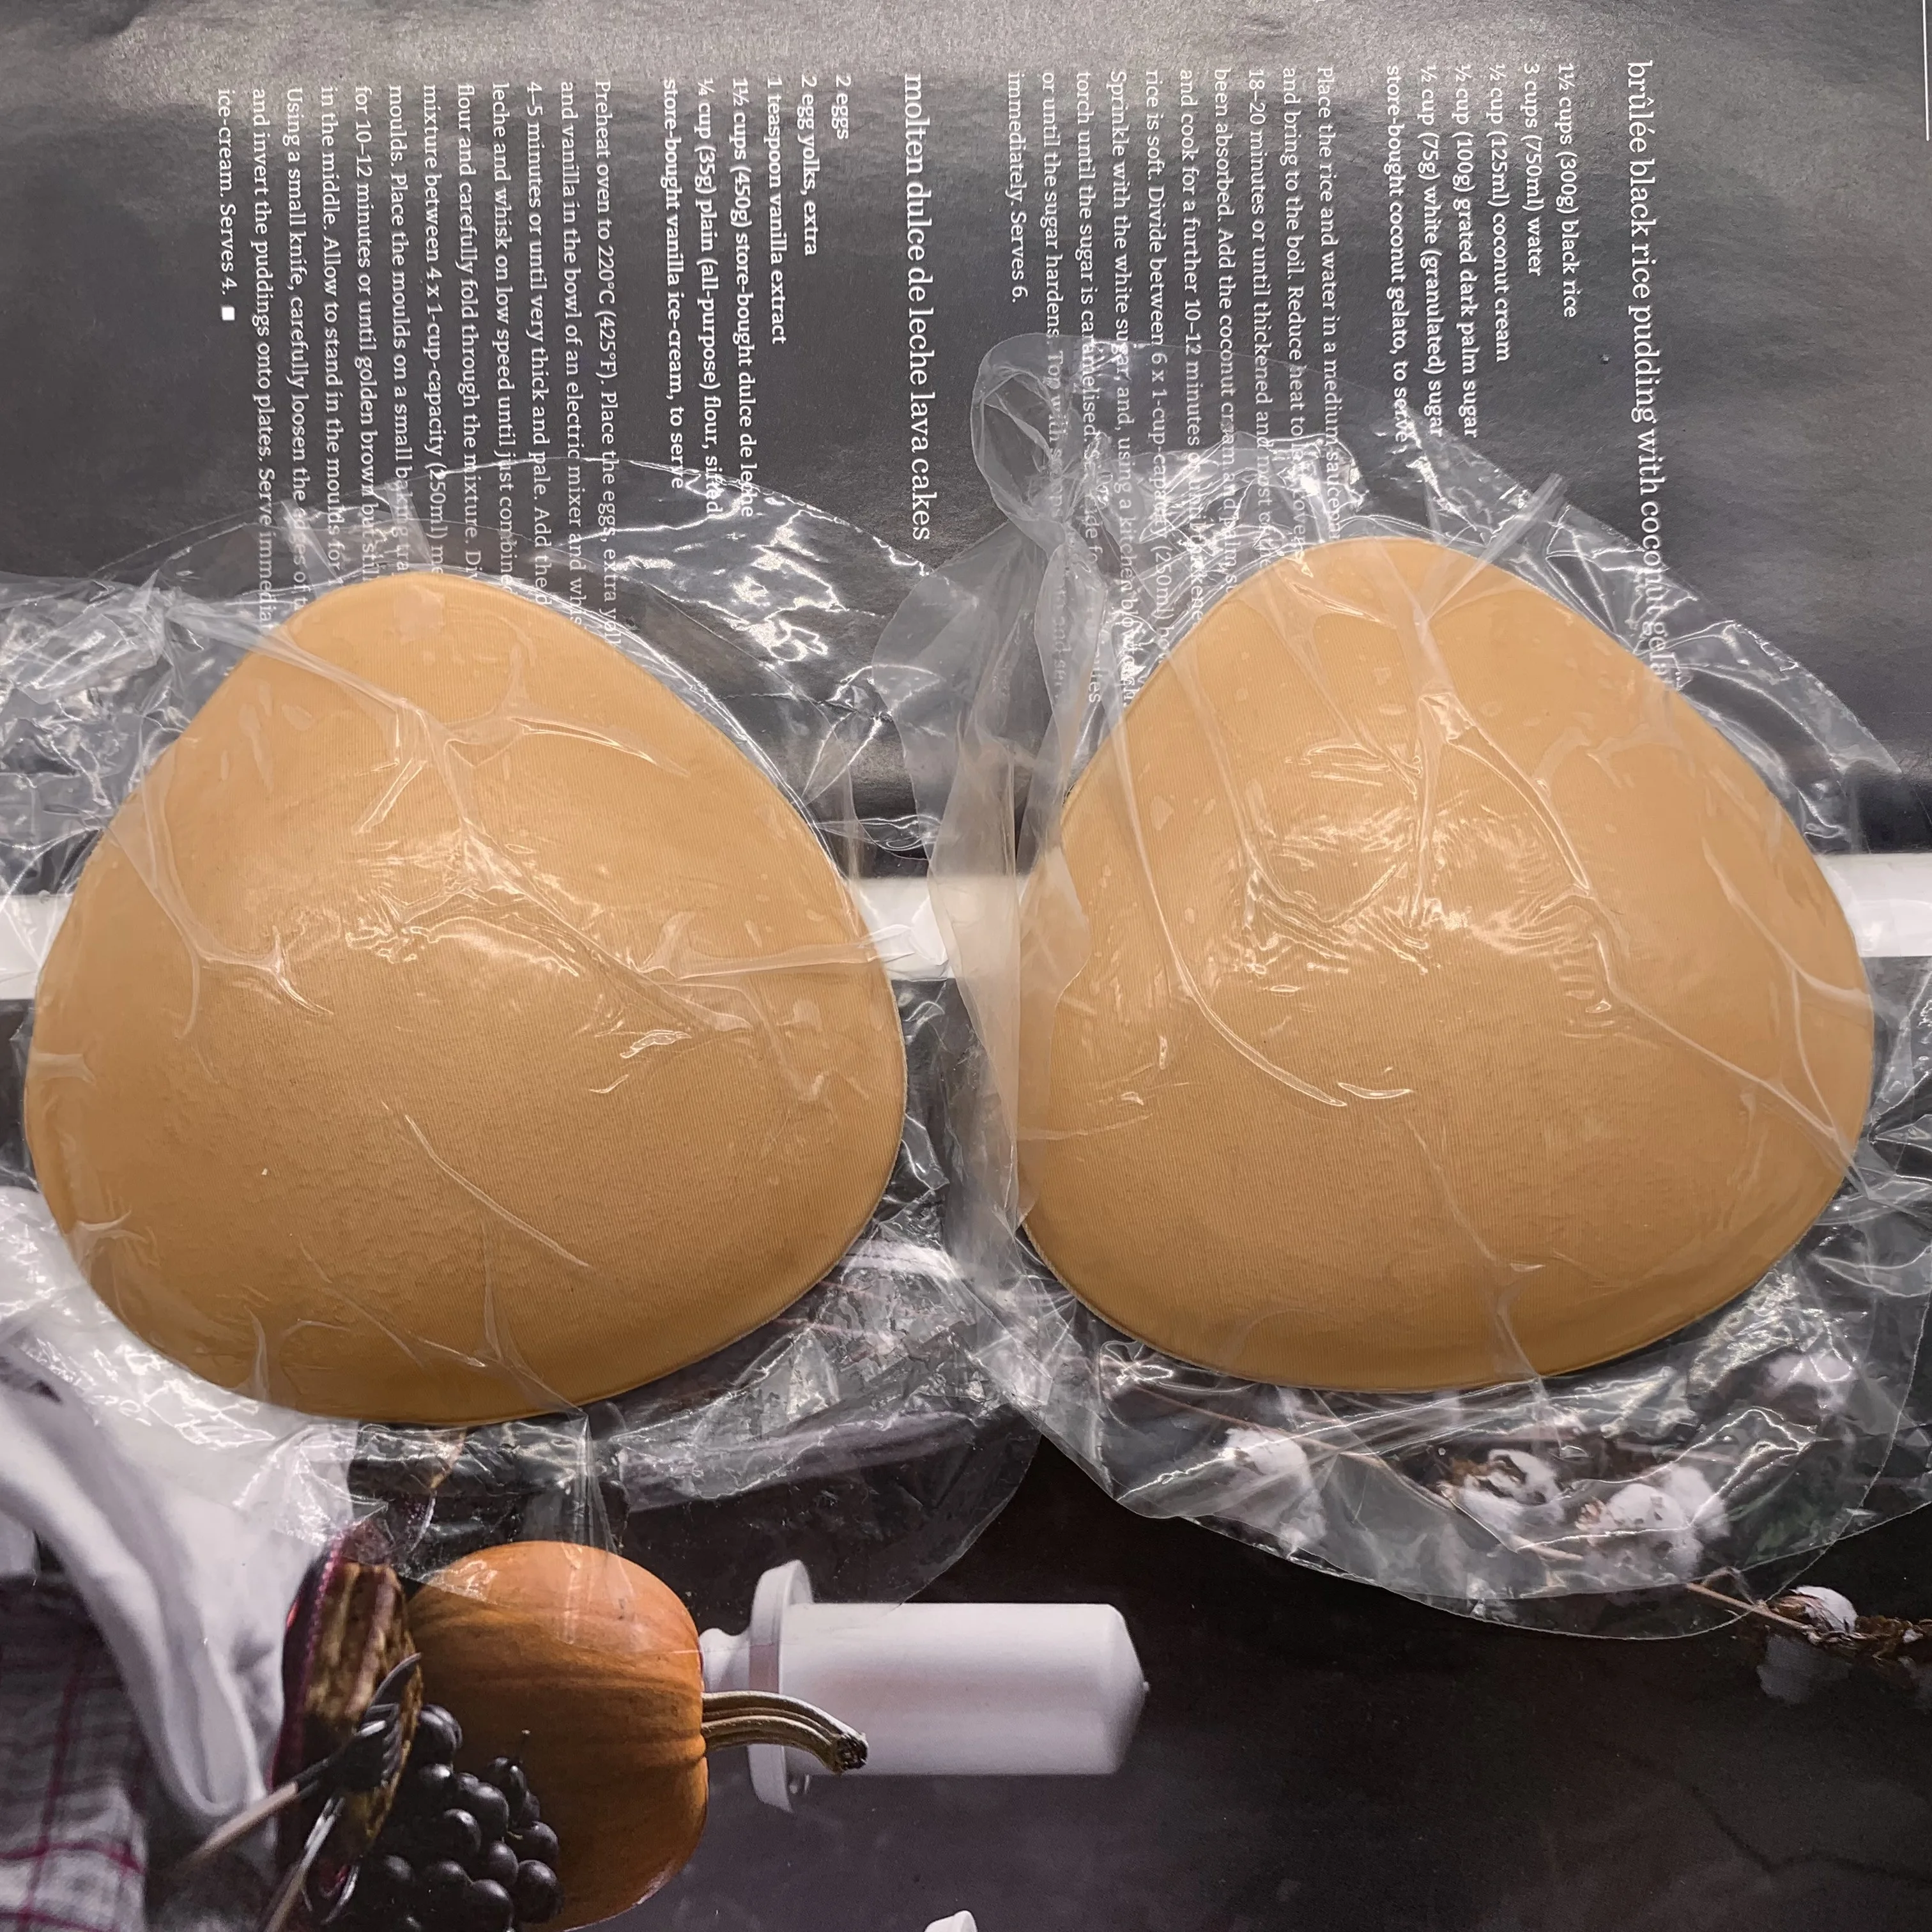 Egg rice - nude photos